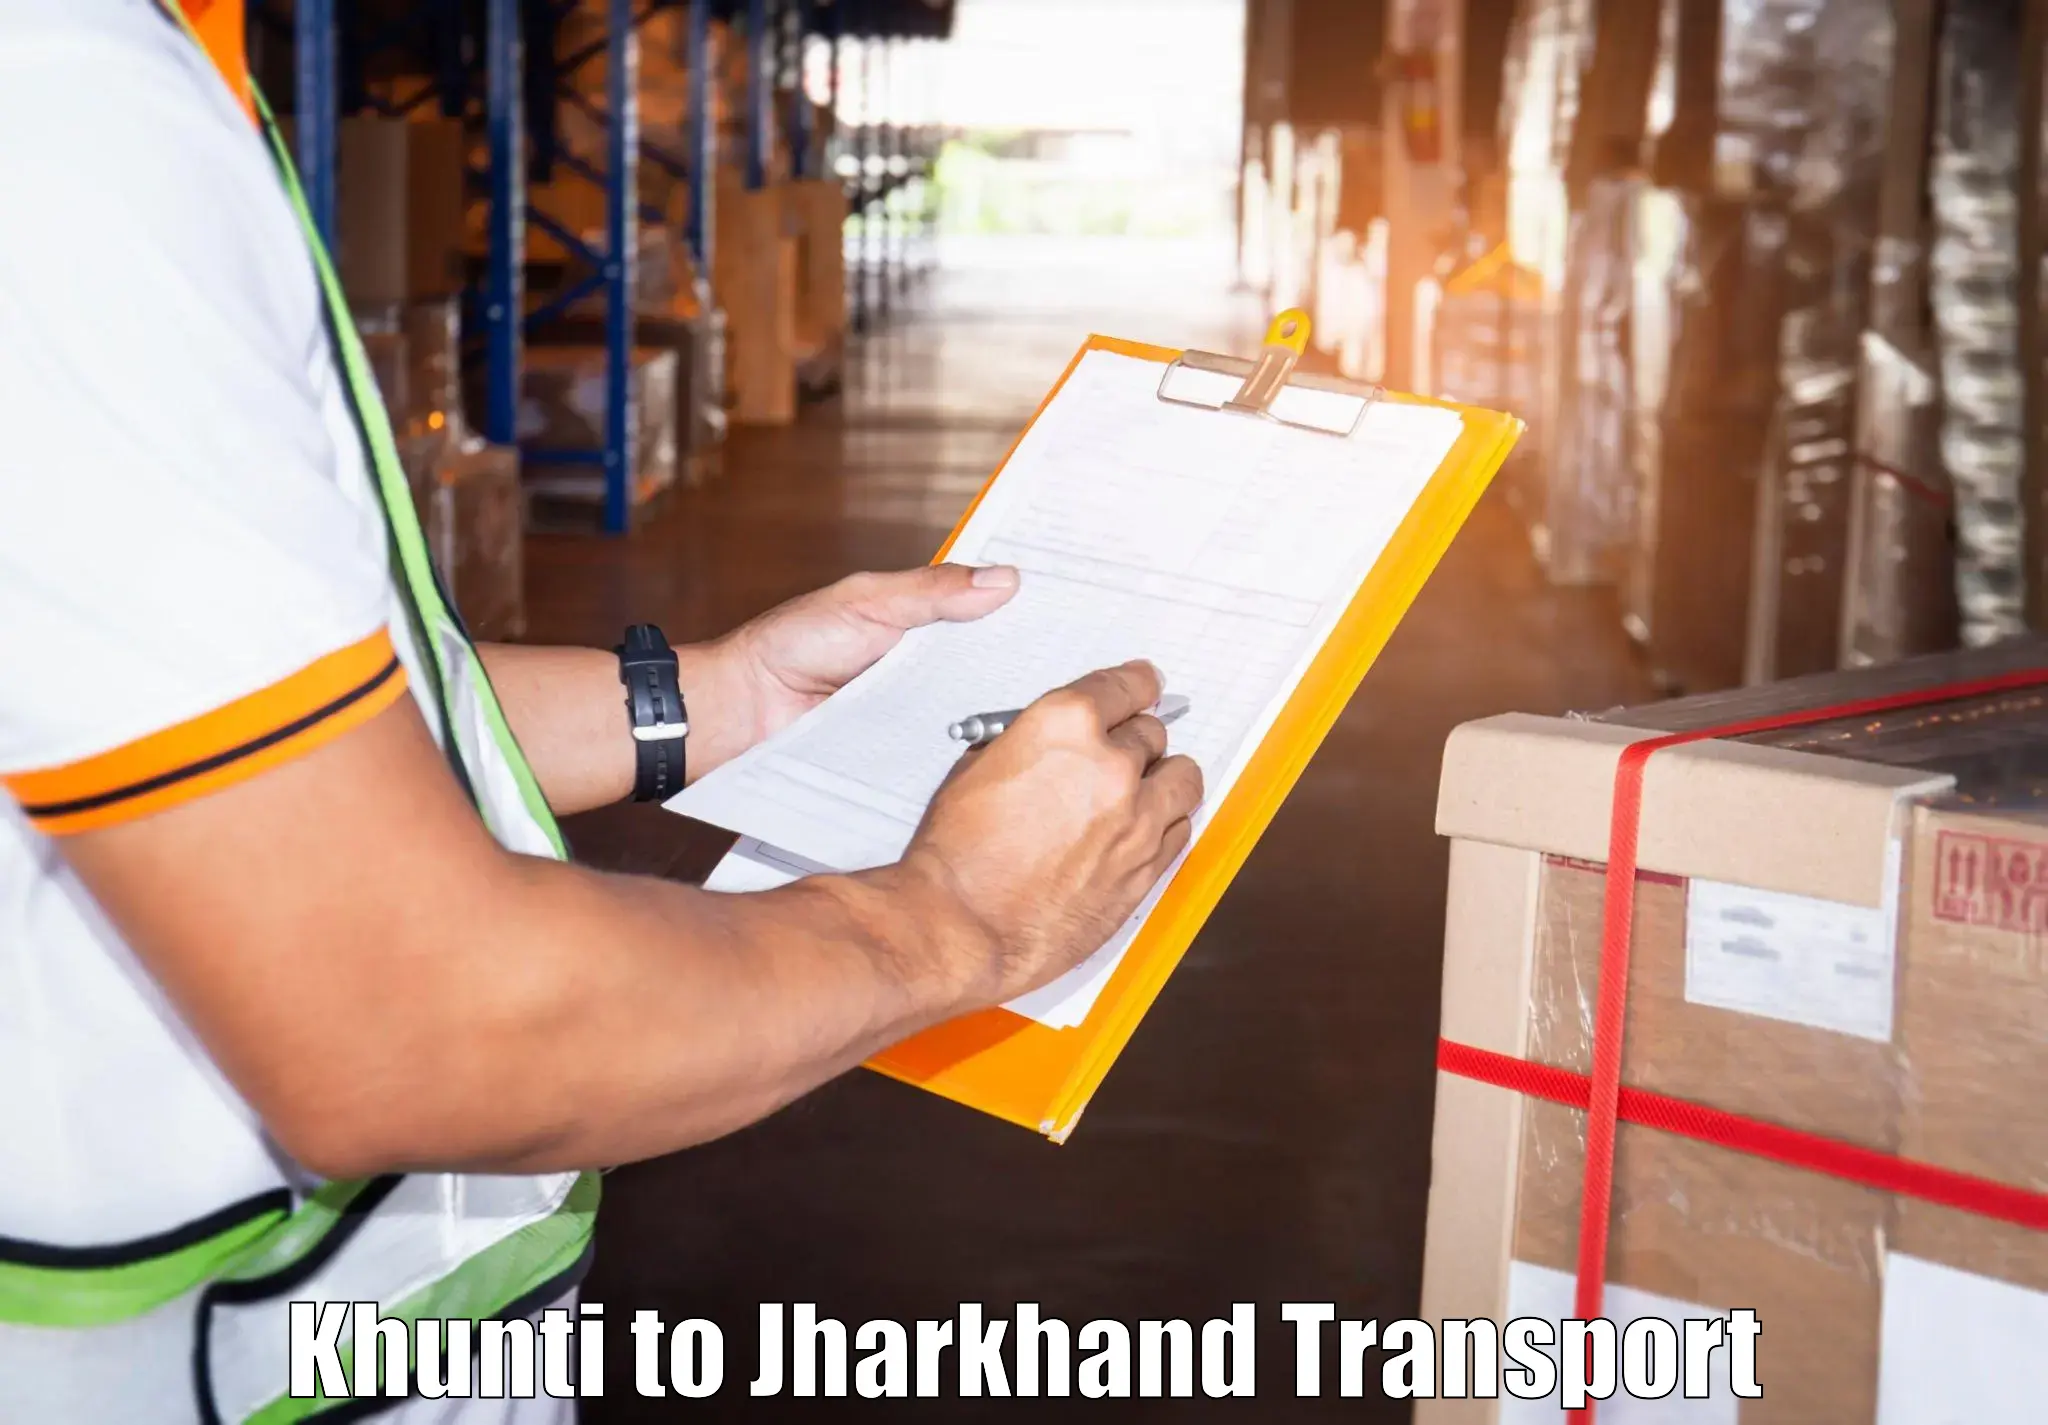 Interstate transport services Khunti to Bokaro